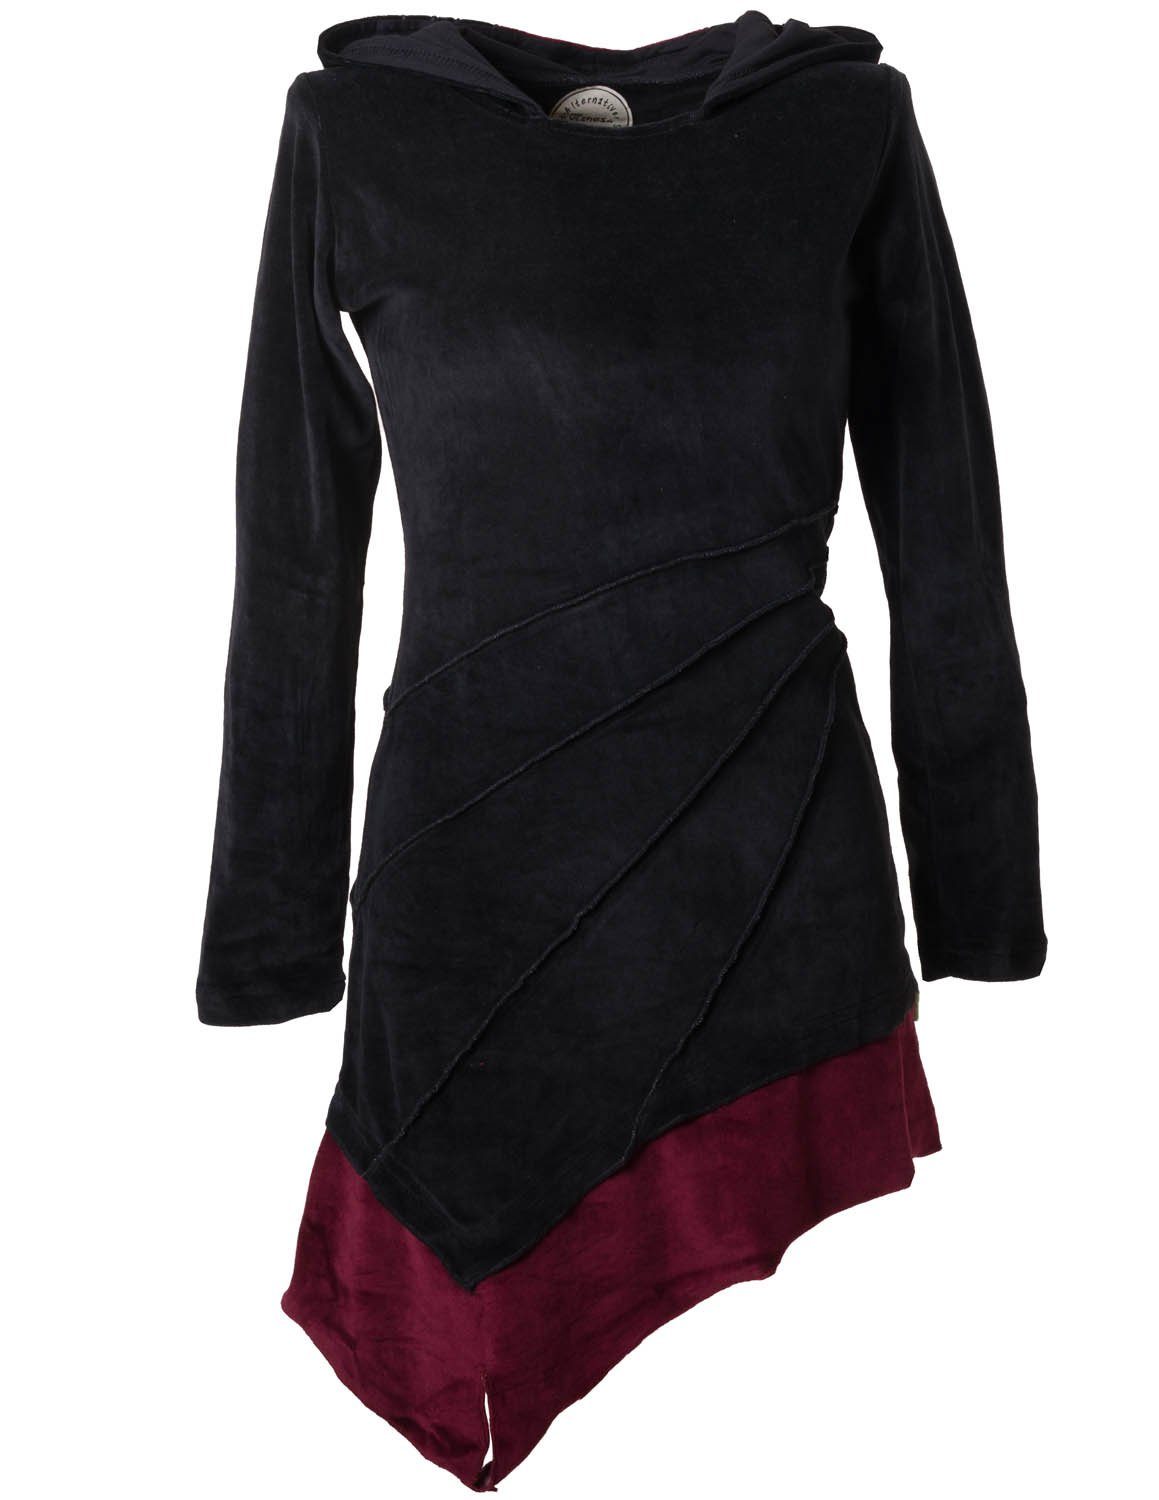 Vishes Zipfelkleid Asymmetrisches Elfenkleid aus Samt m. Zipfelkapuze Hippie, Gothik, Ethno Style schwarz